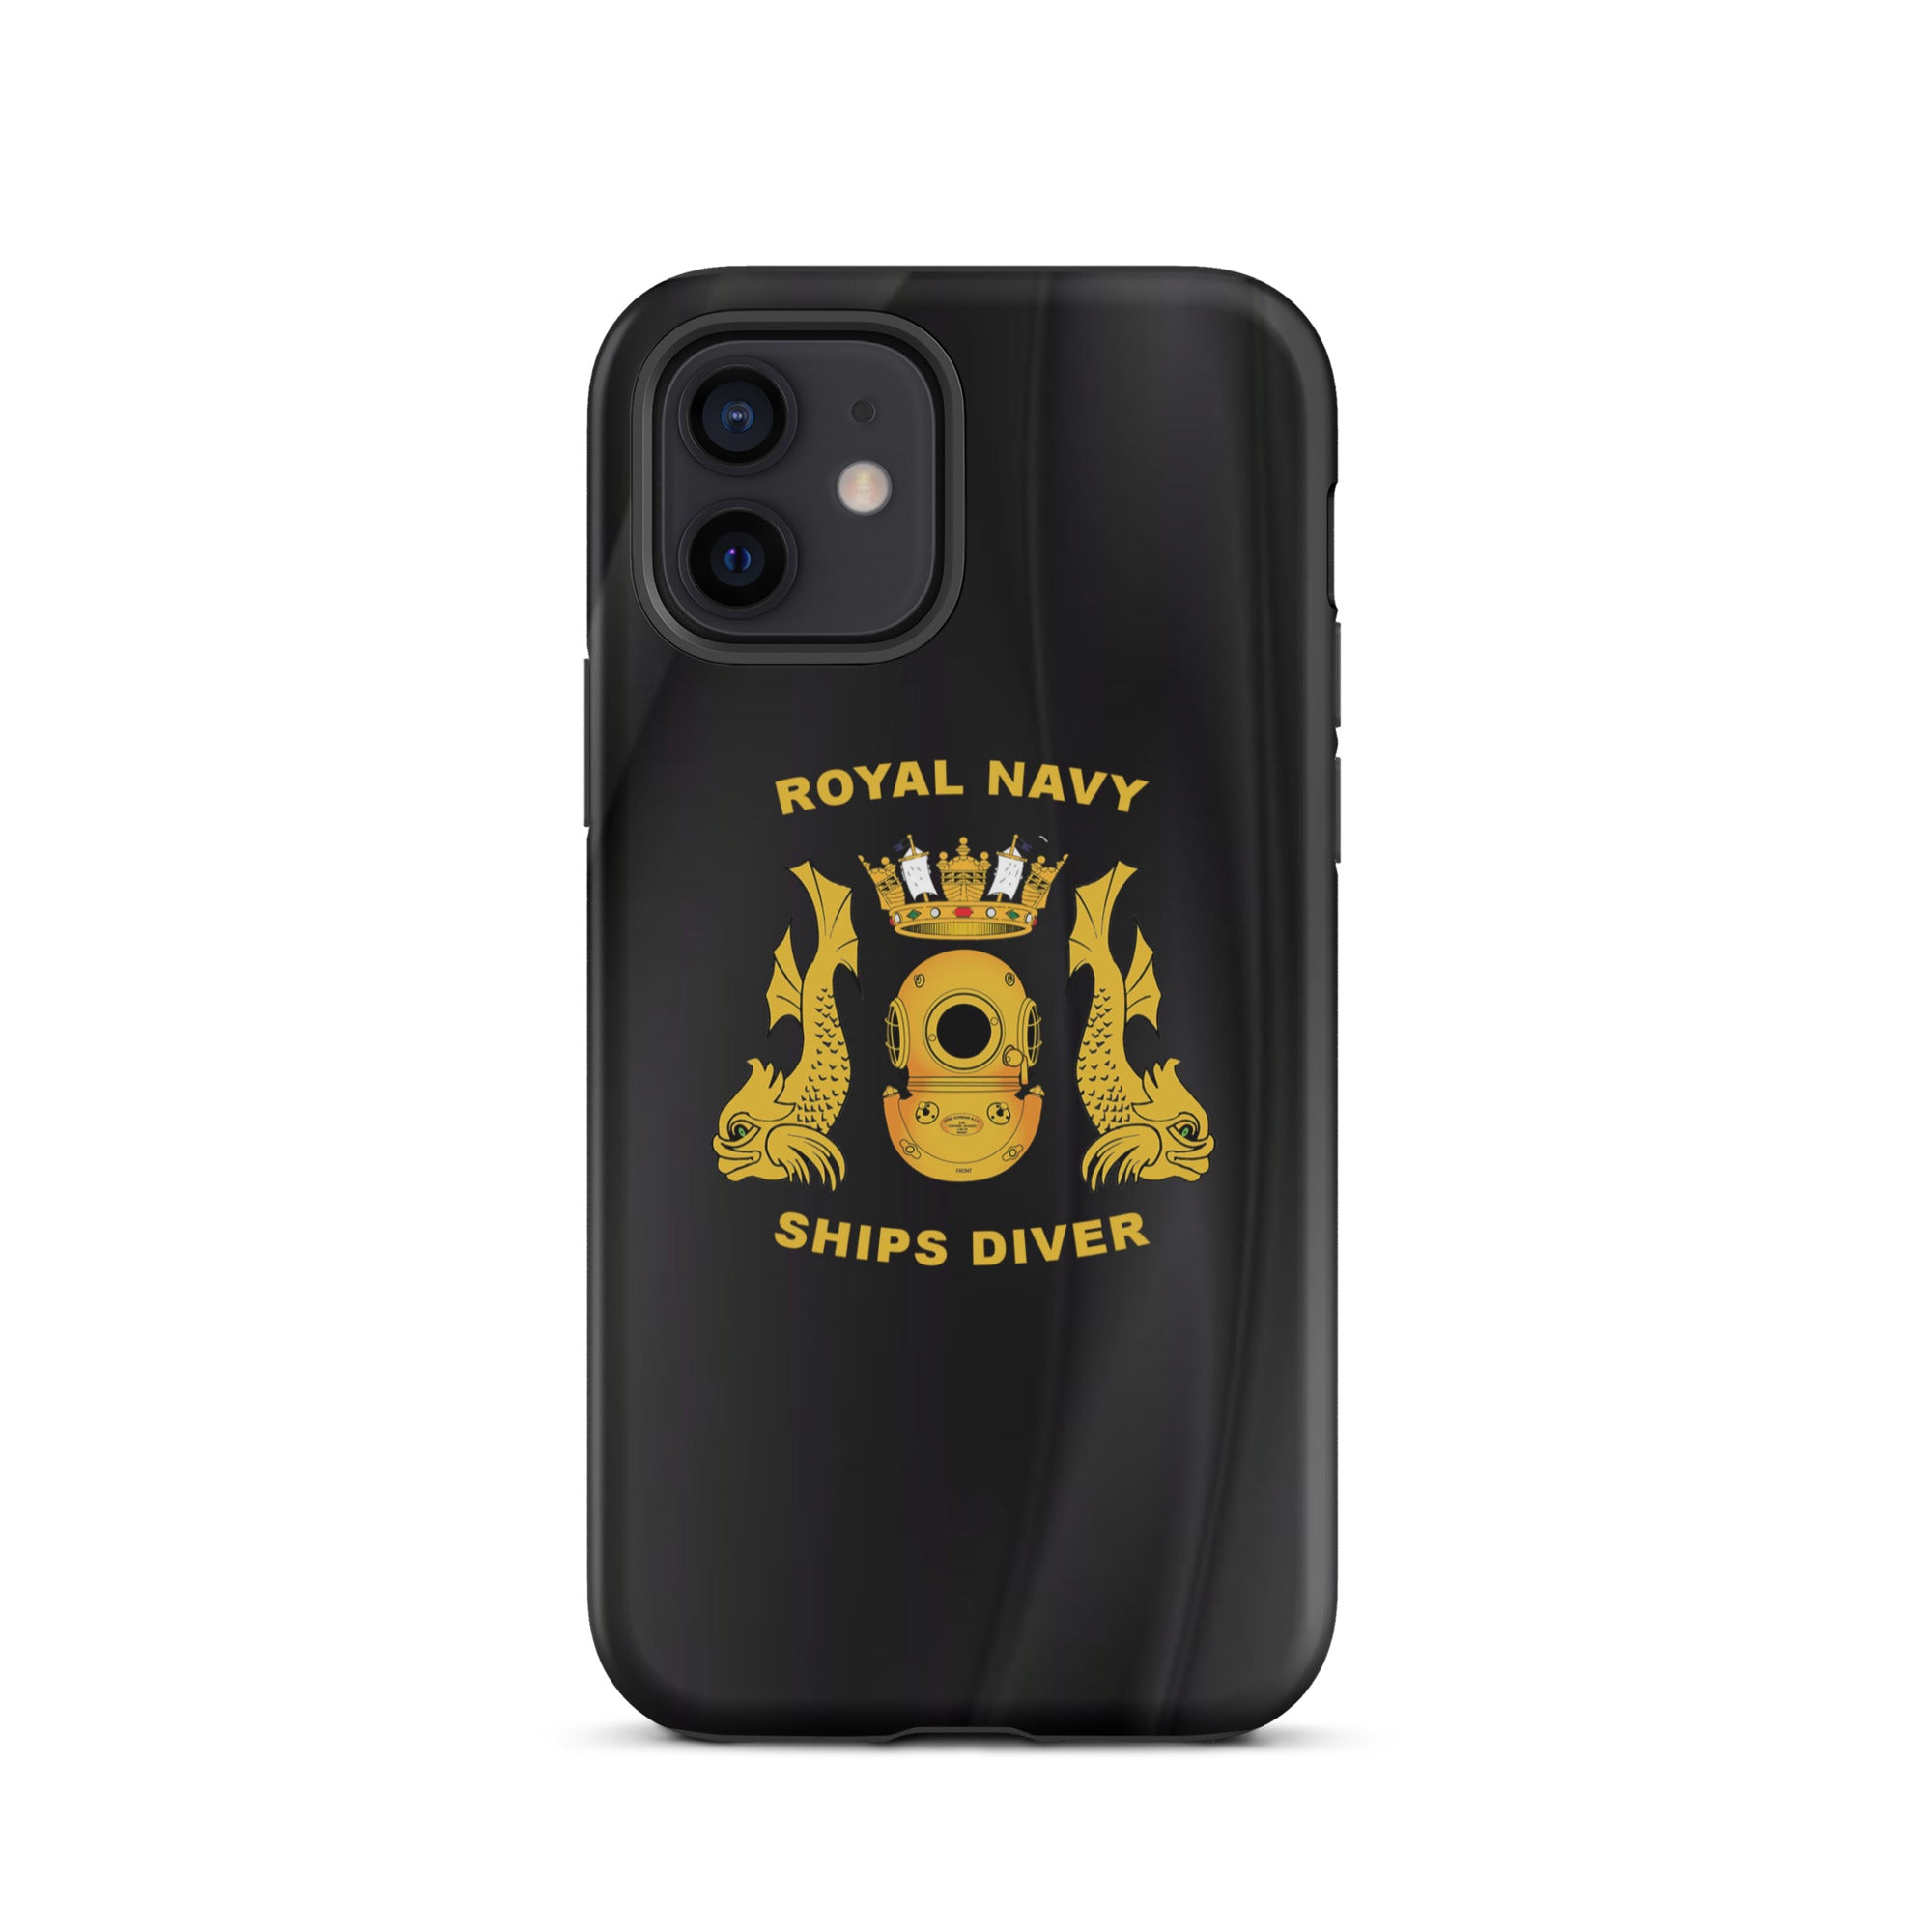 Royal Navy Ships Diver - Tough iPhone case